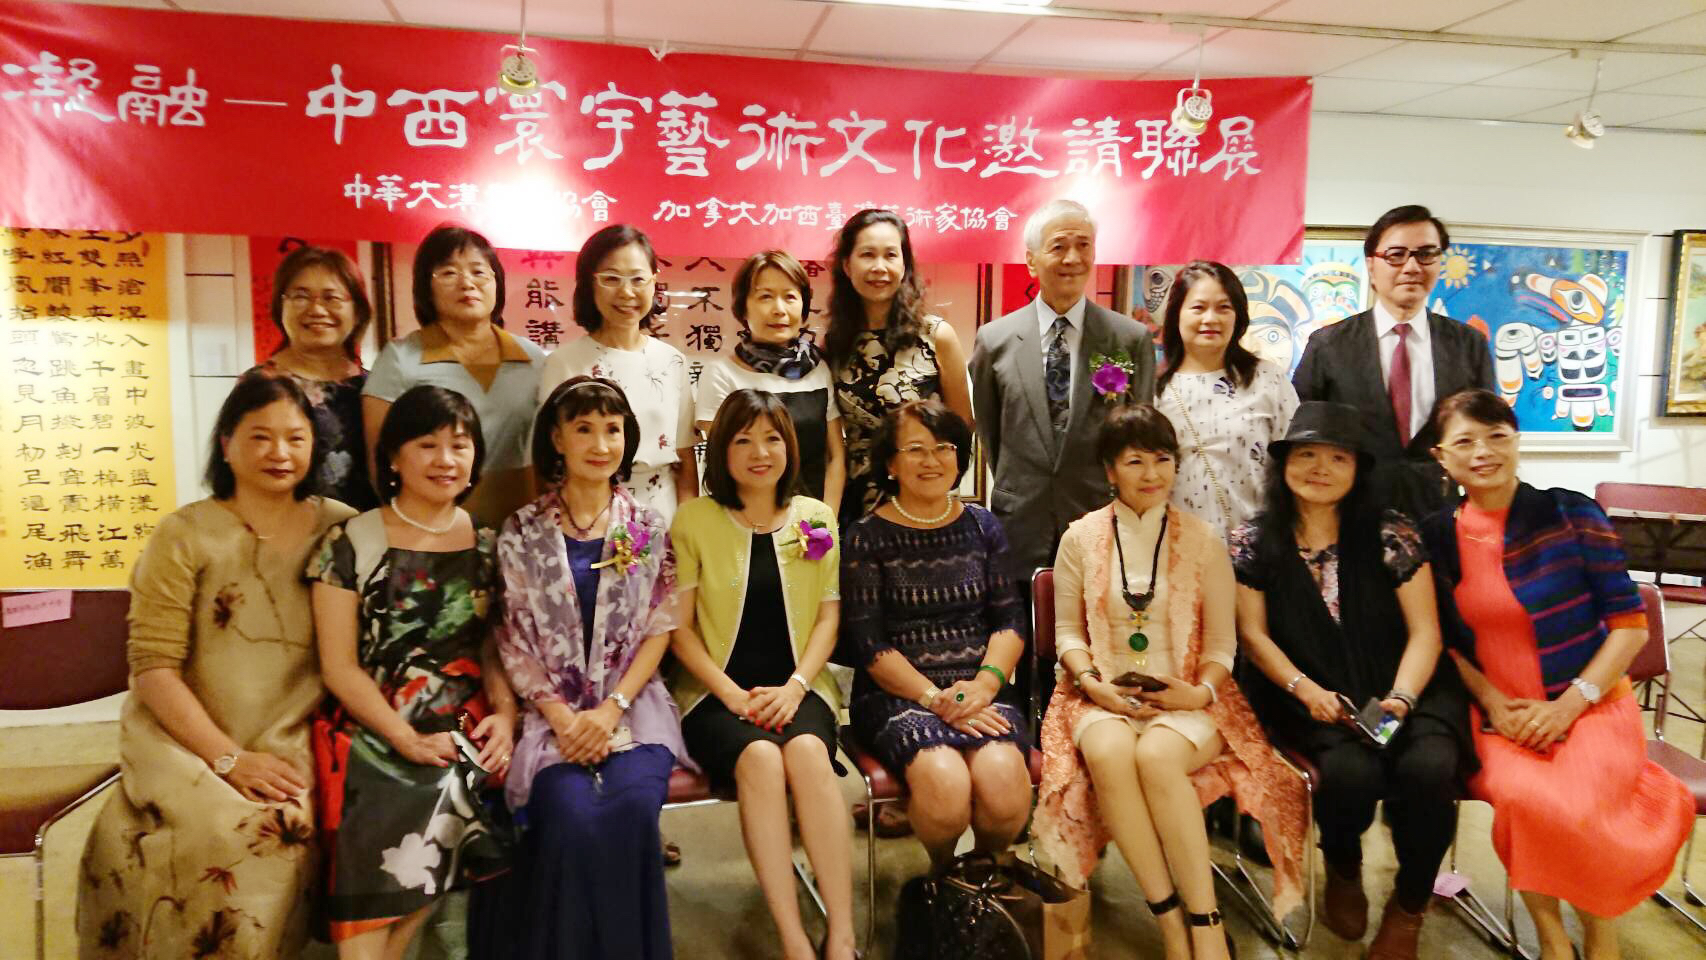 世界華人工商婦女企管協會溫哥華分會姐妹於國父紀念館舉辦畫展